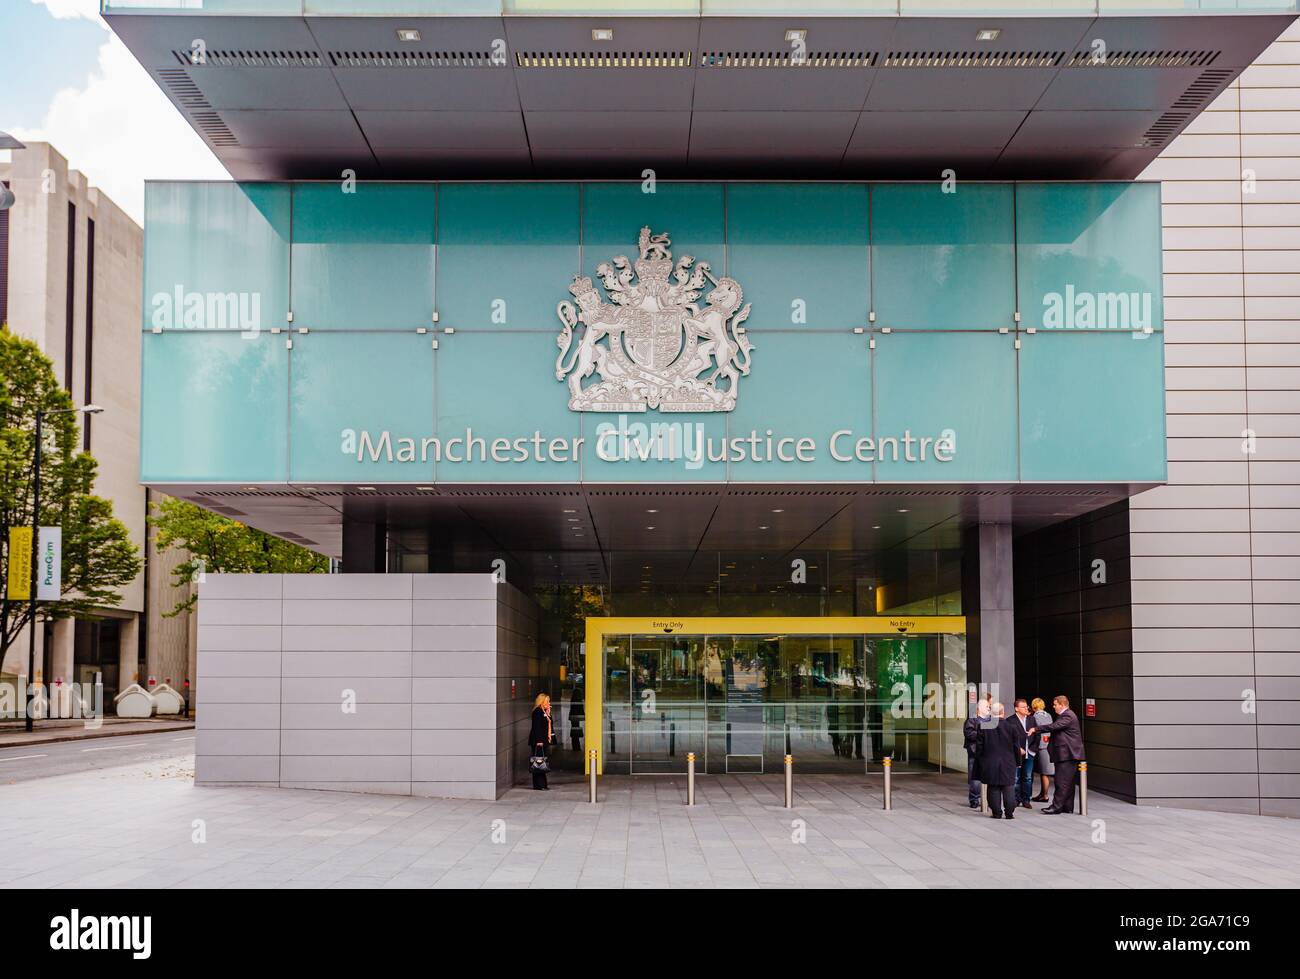 Manchester Civil Justice Center, ein modernes Gebäude von Regierungsgerichten in Spinningfields Manchester, Nordwestengland, Großbritannien Stockfoto